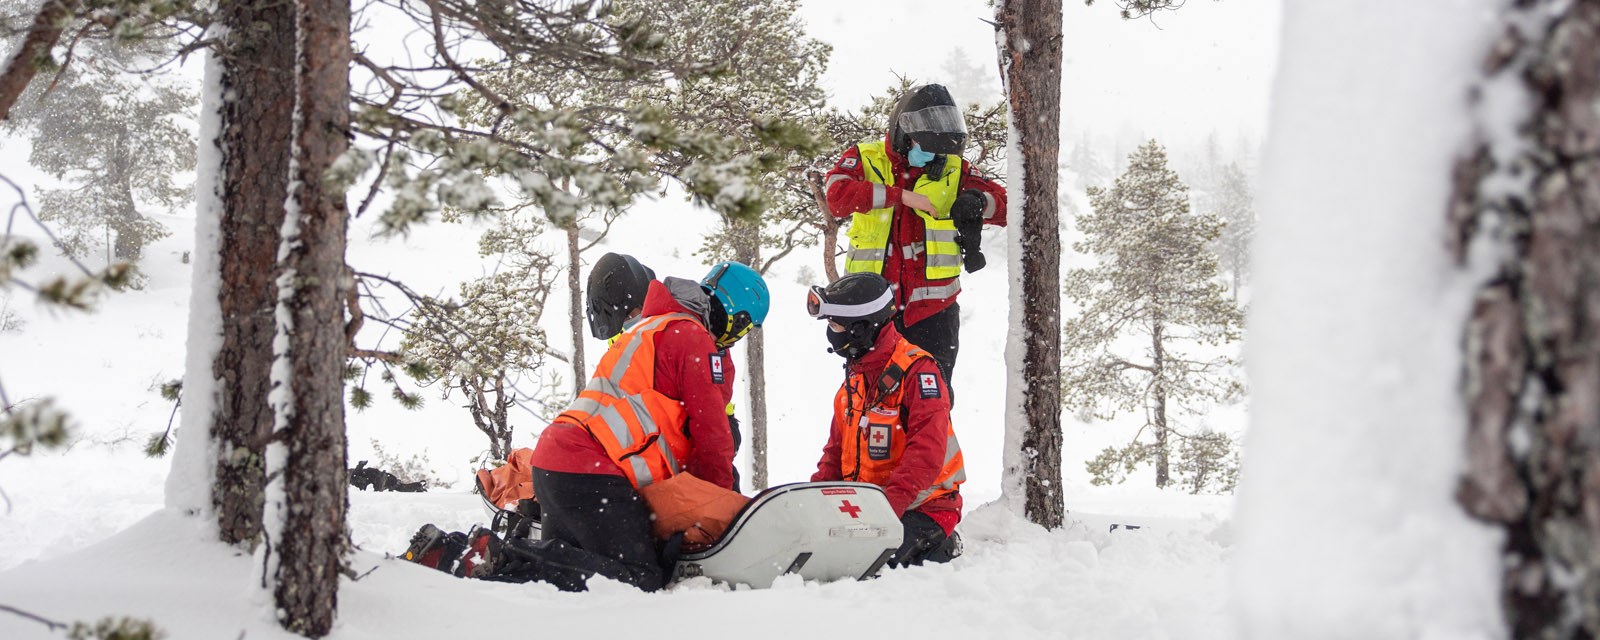 Fire stykker i Røde Kors uniform står over en pulk i snøen